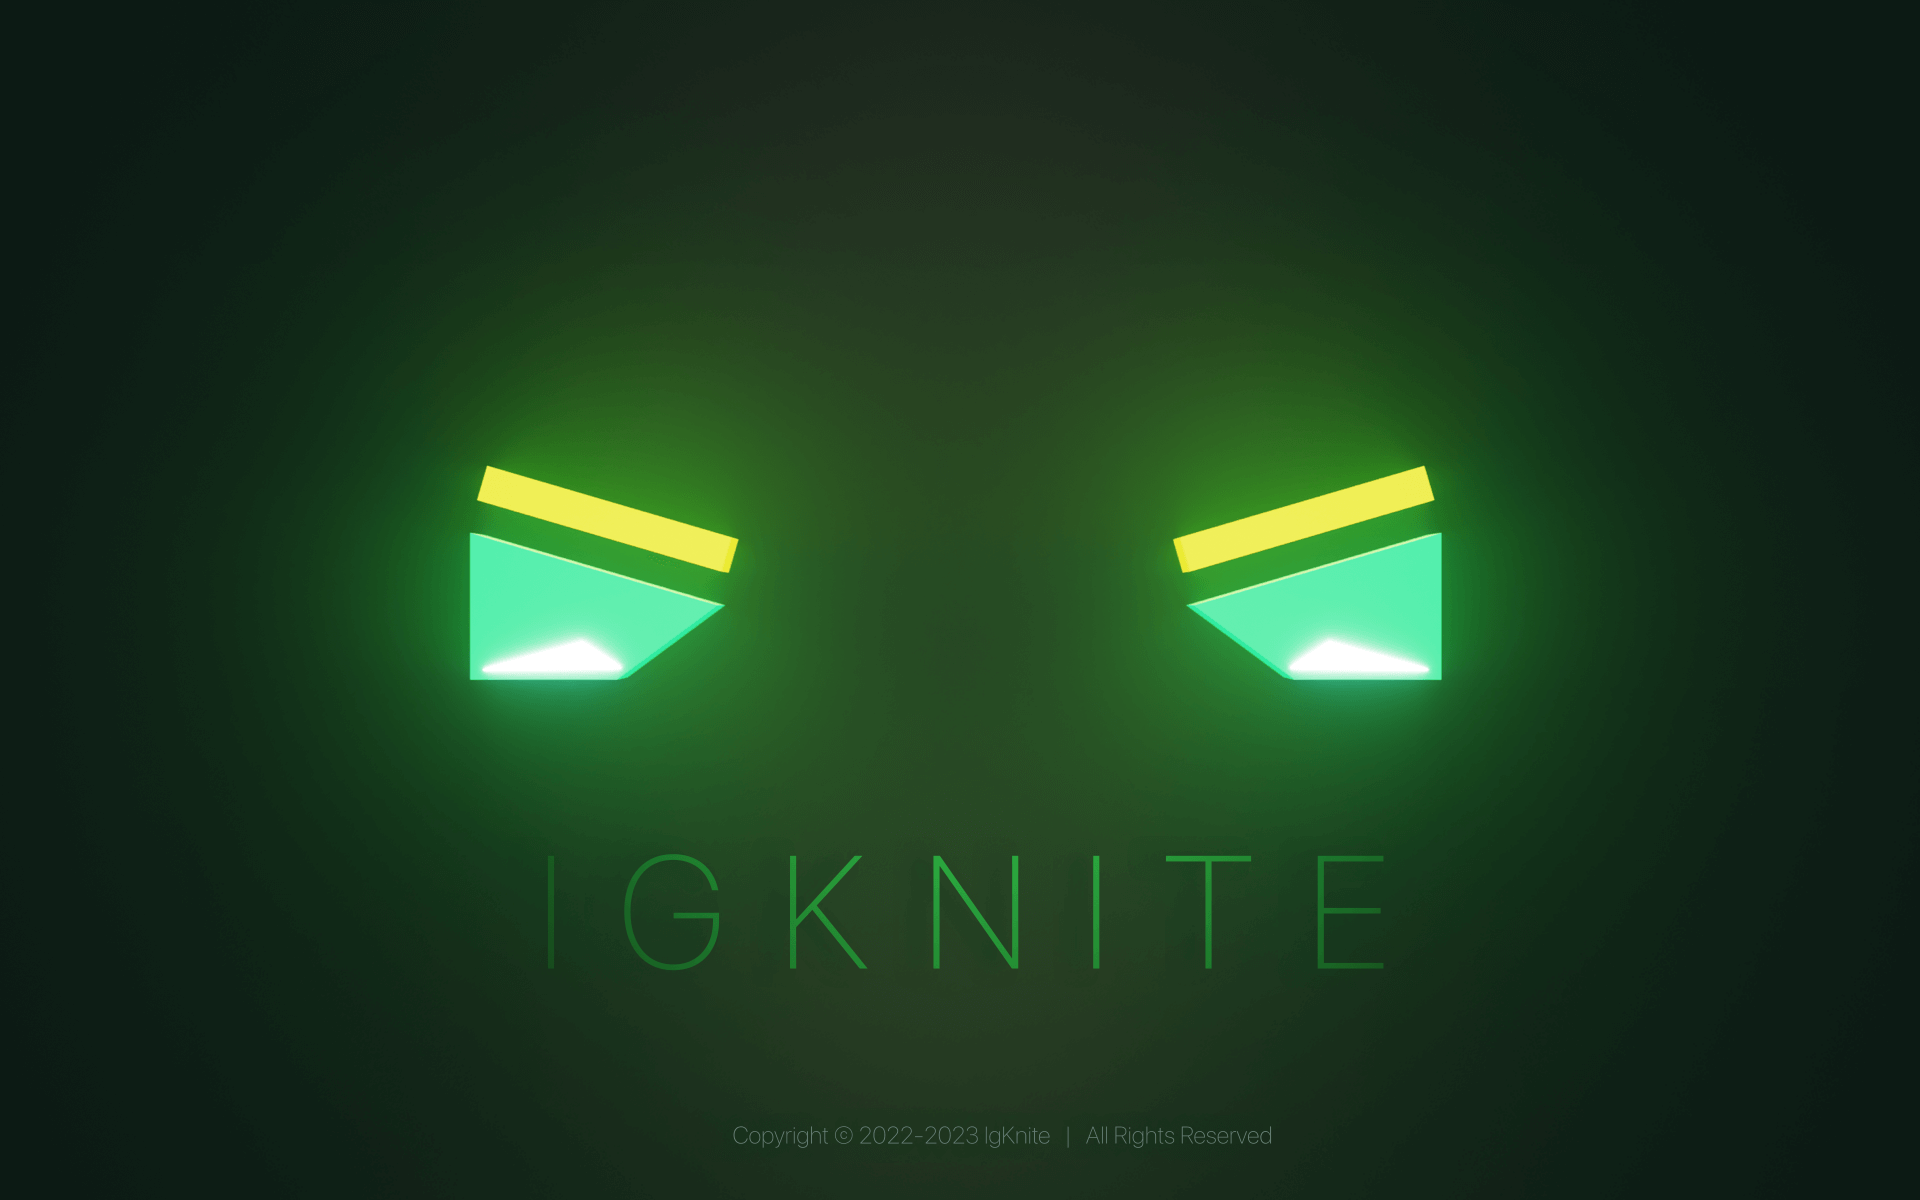 IgKnite